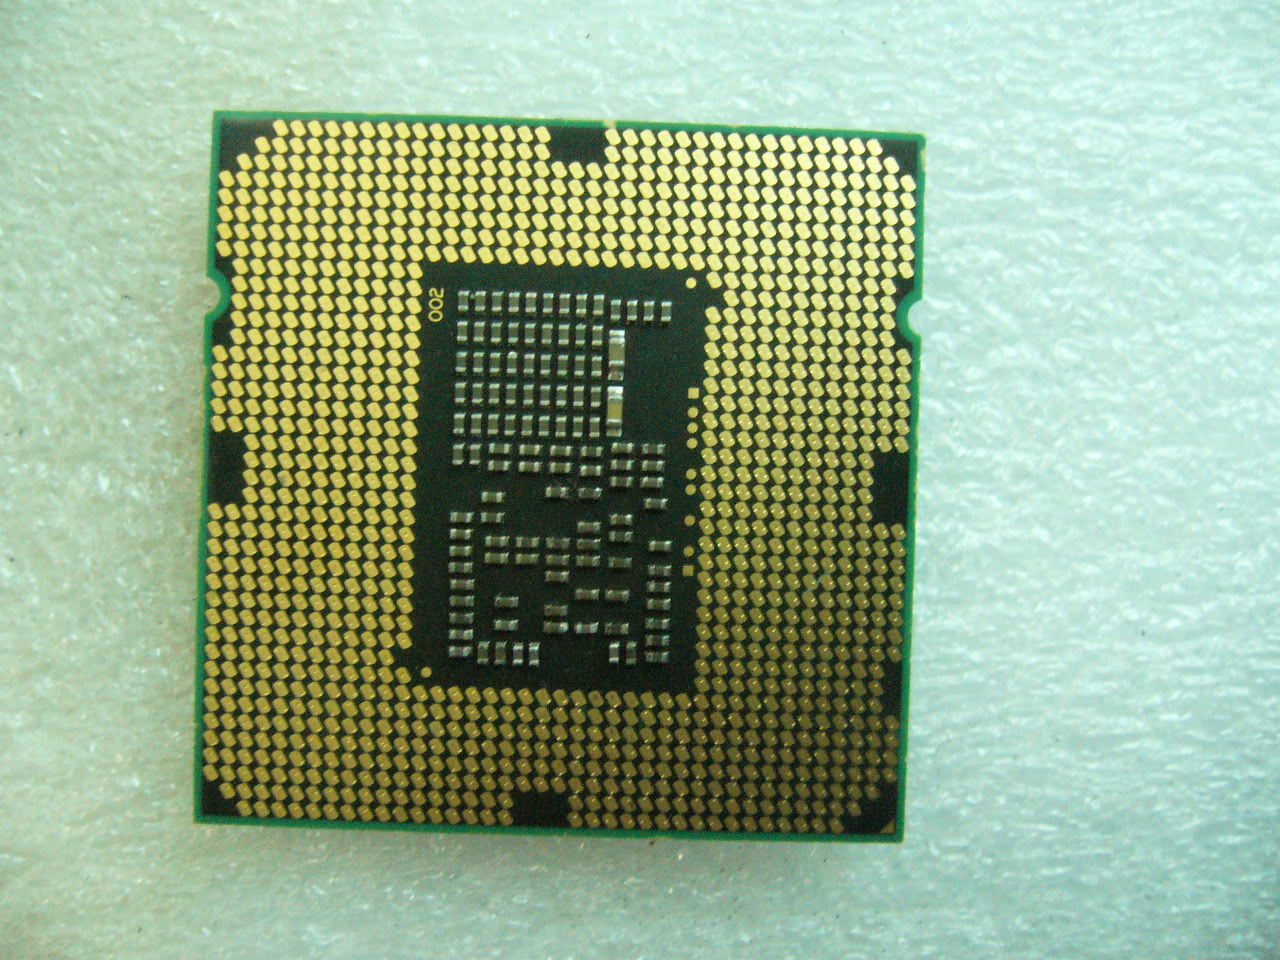 QTY 1x INTEL Pentium CPU G6950 2.8GHZ/3MB LGA1156 SLBTG SLBMS - Click Image to Close